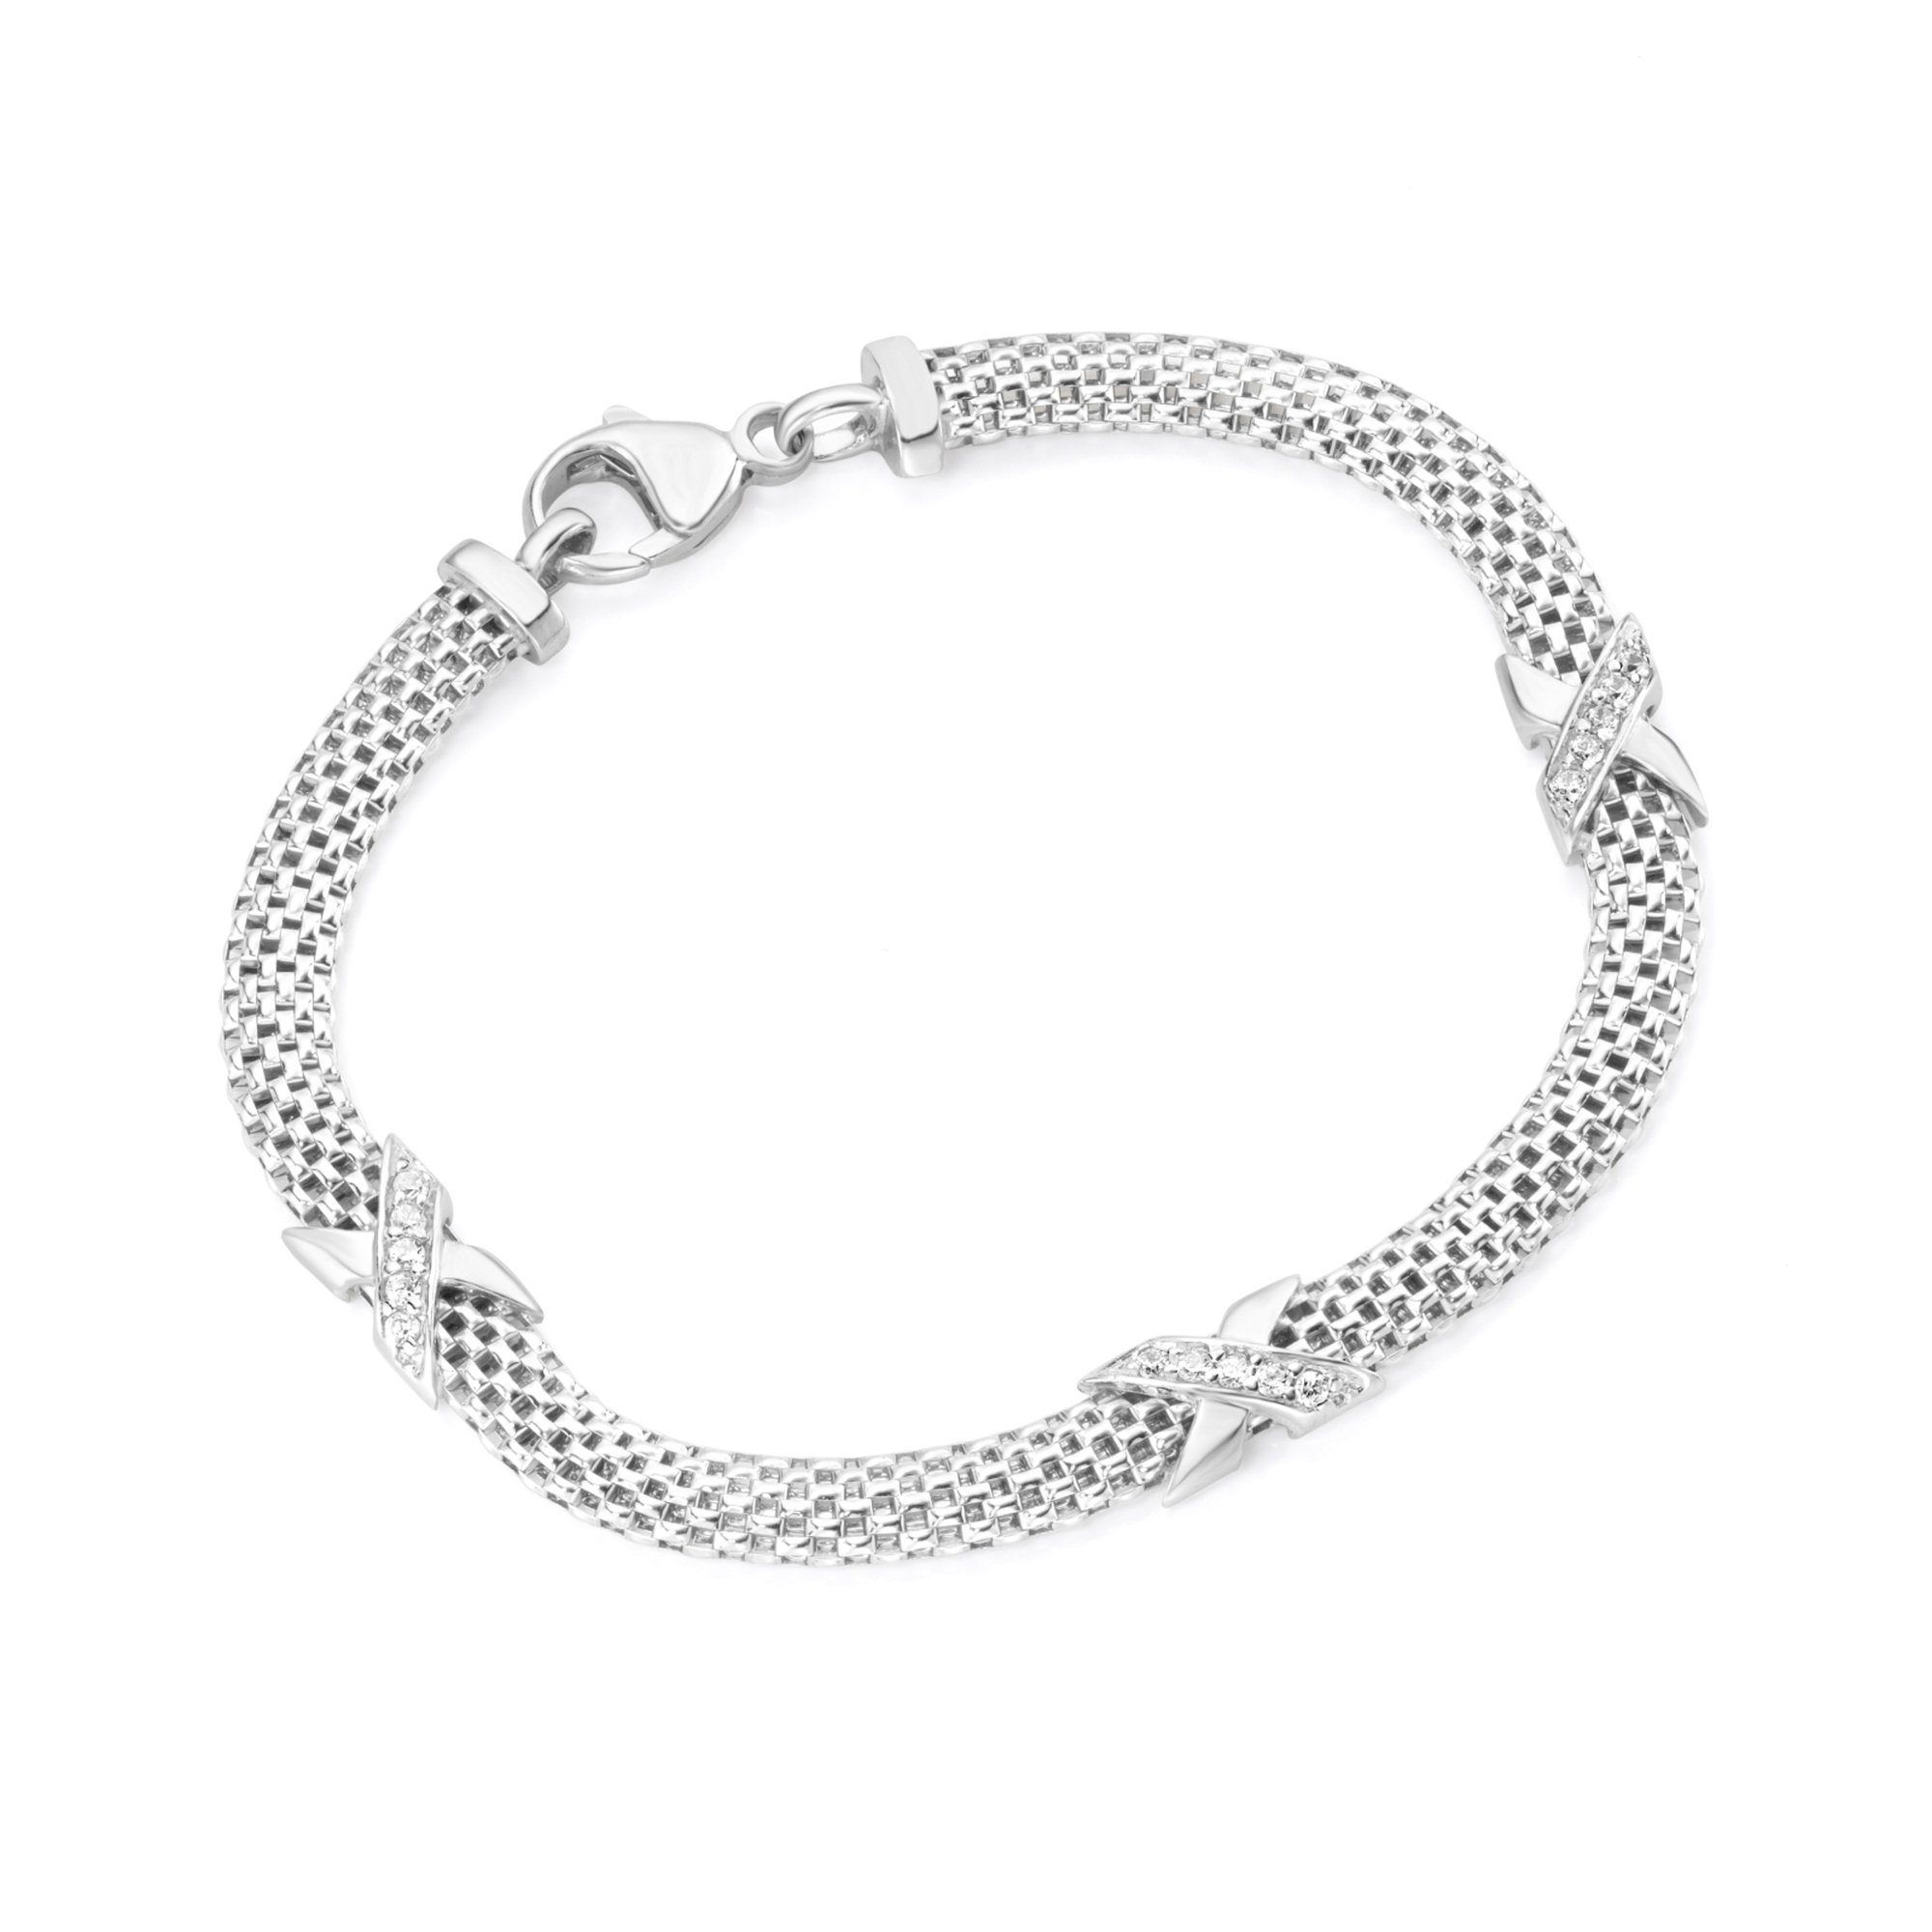 Damen Schmuck Smart Jewel Armband edel mit Zirkonia Steinen, Silber 925